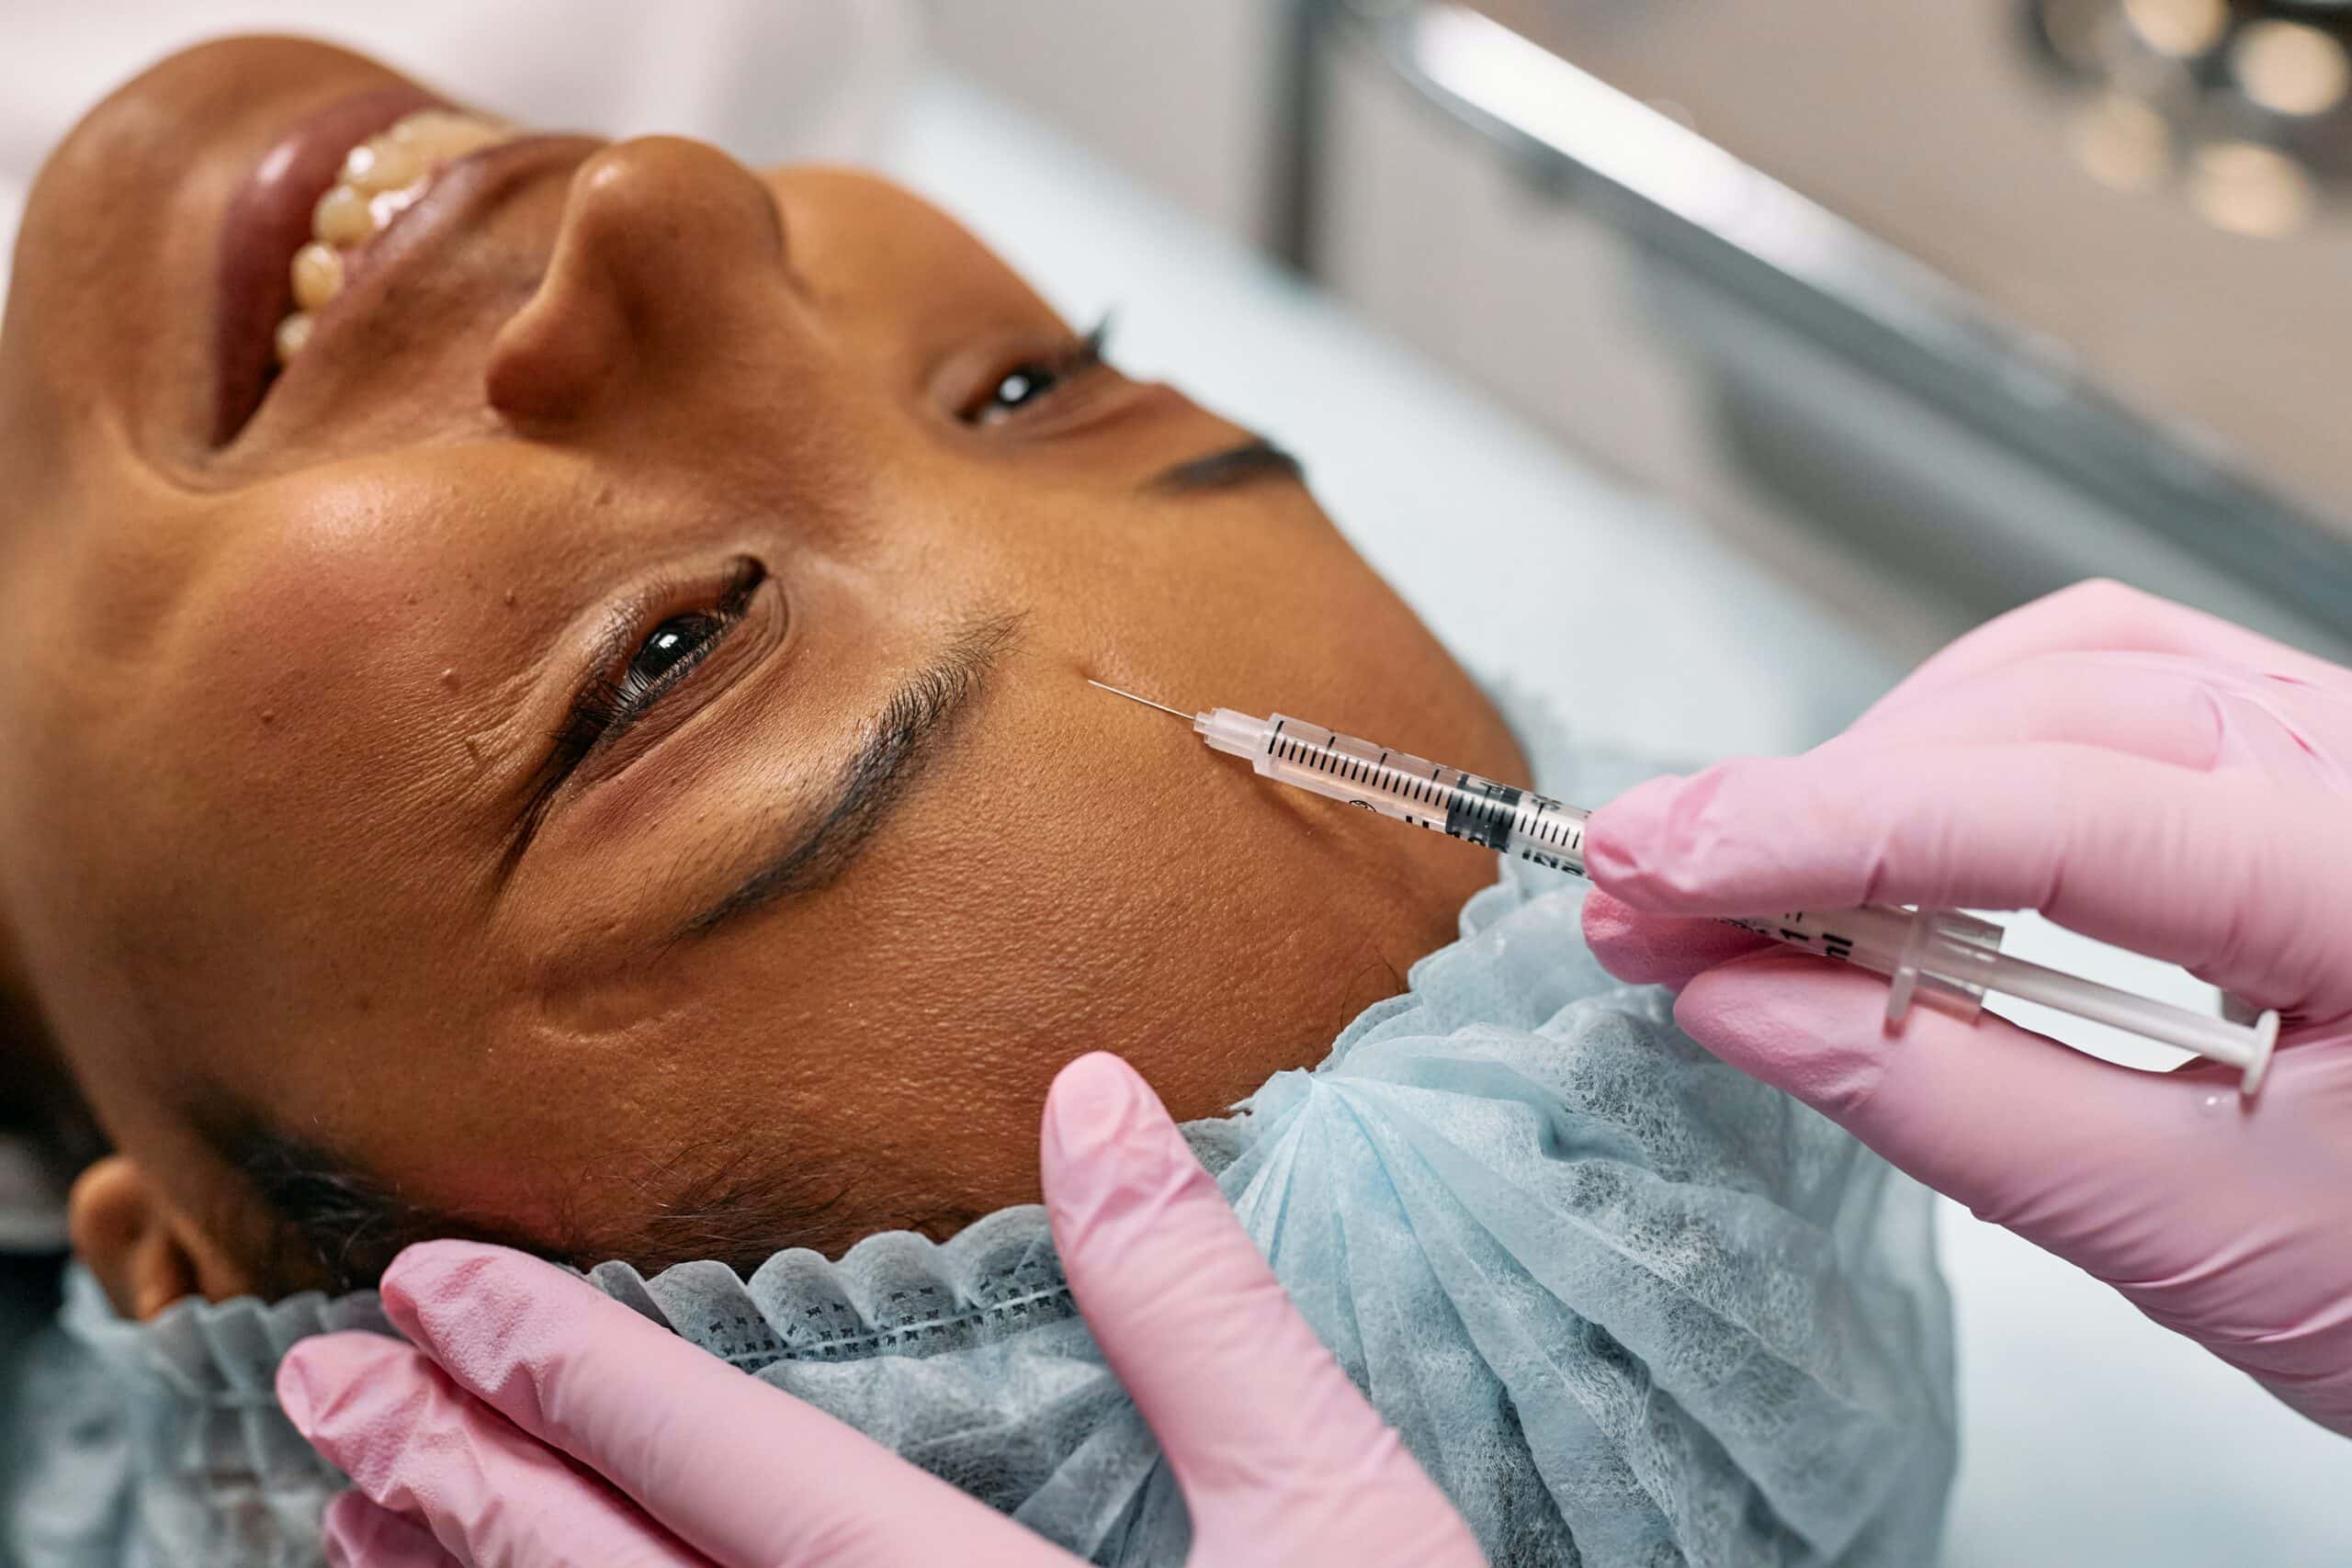 טיפול פנים פלזמה הוא טיפול מהפכני לטיפוח העור המשתמש בטכנולוגיית פלזמה למיצוק ומיצוק העור, שיפור המרקם והמראה שלו.